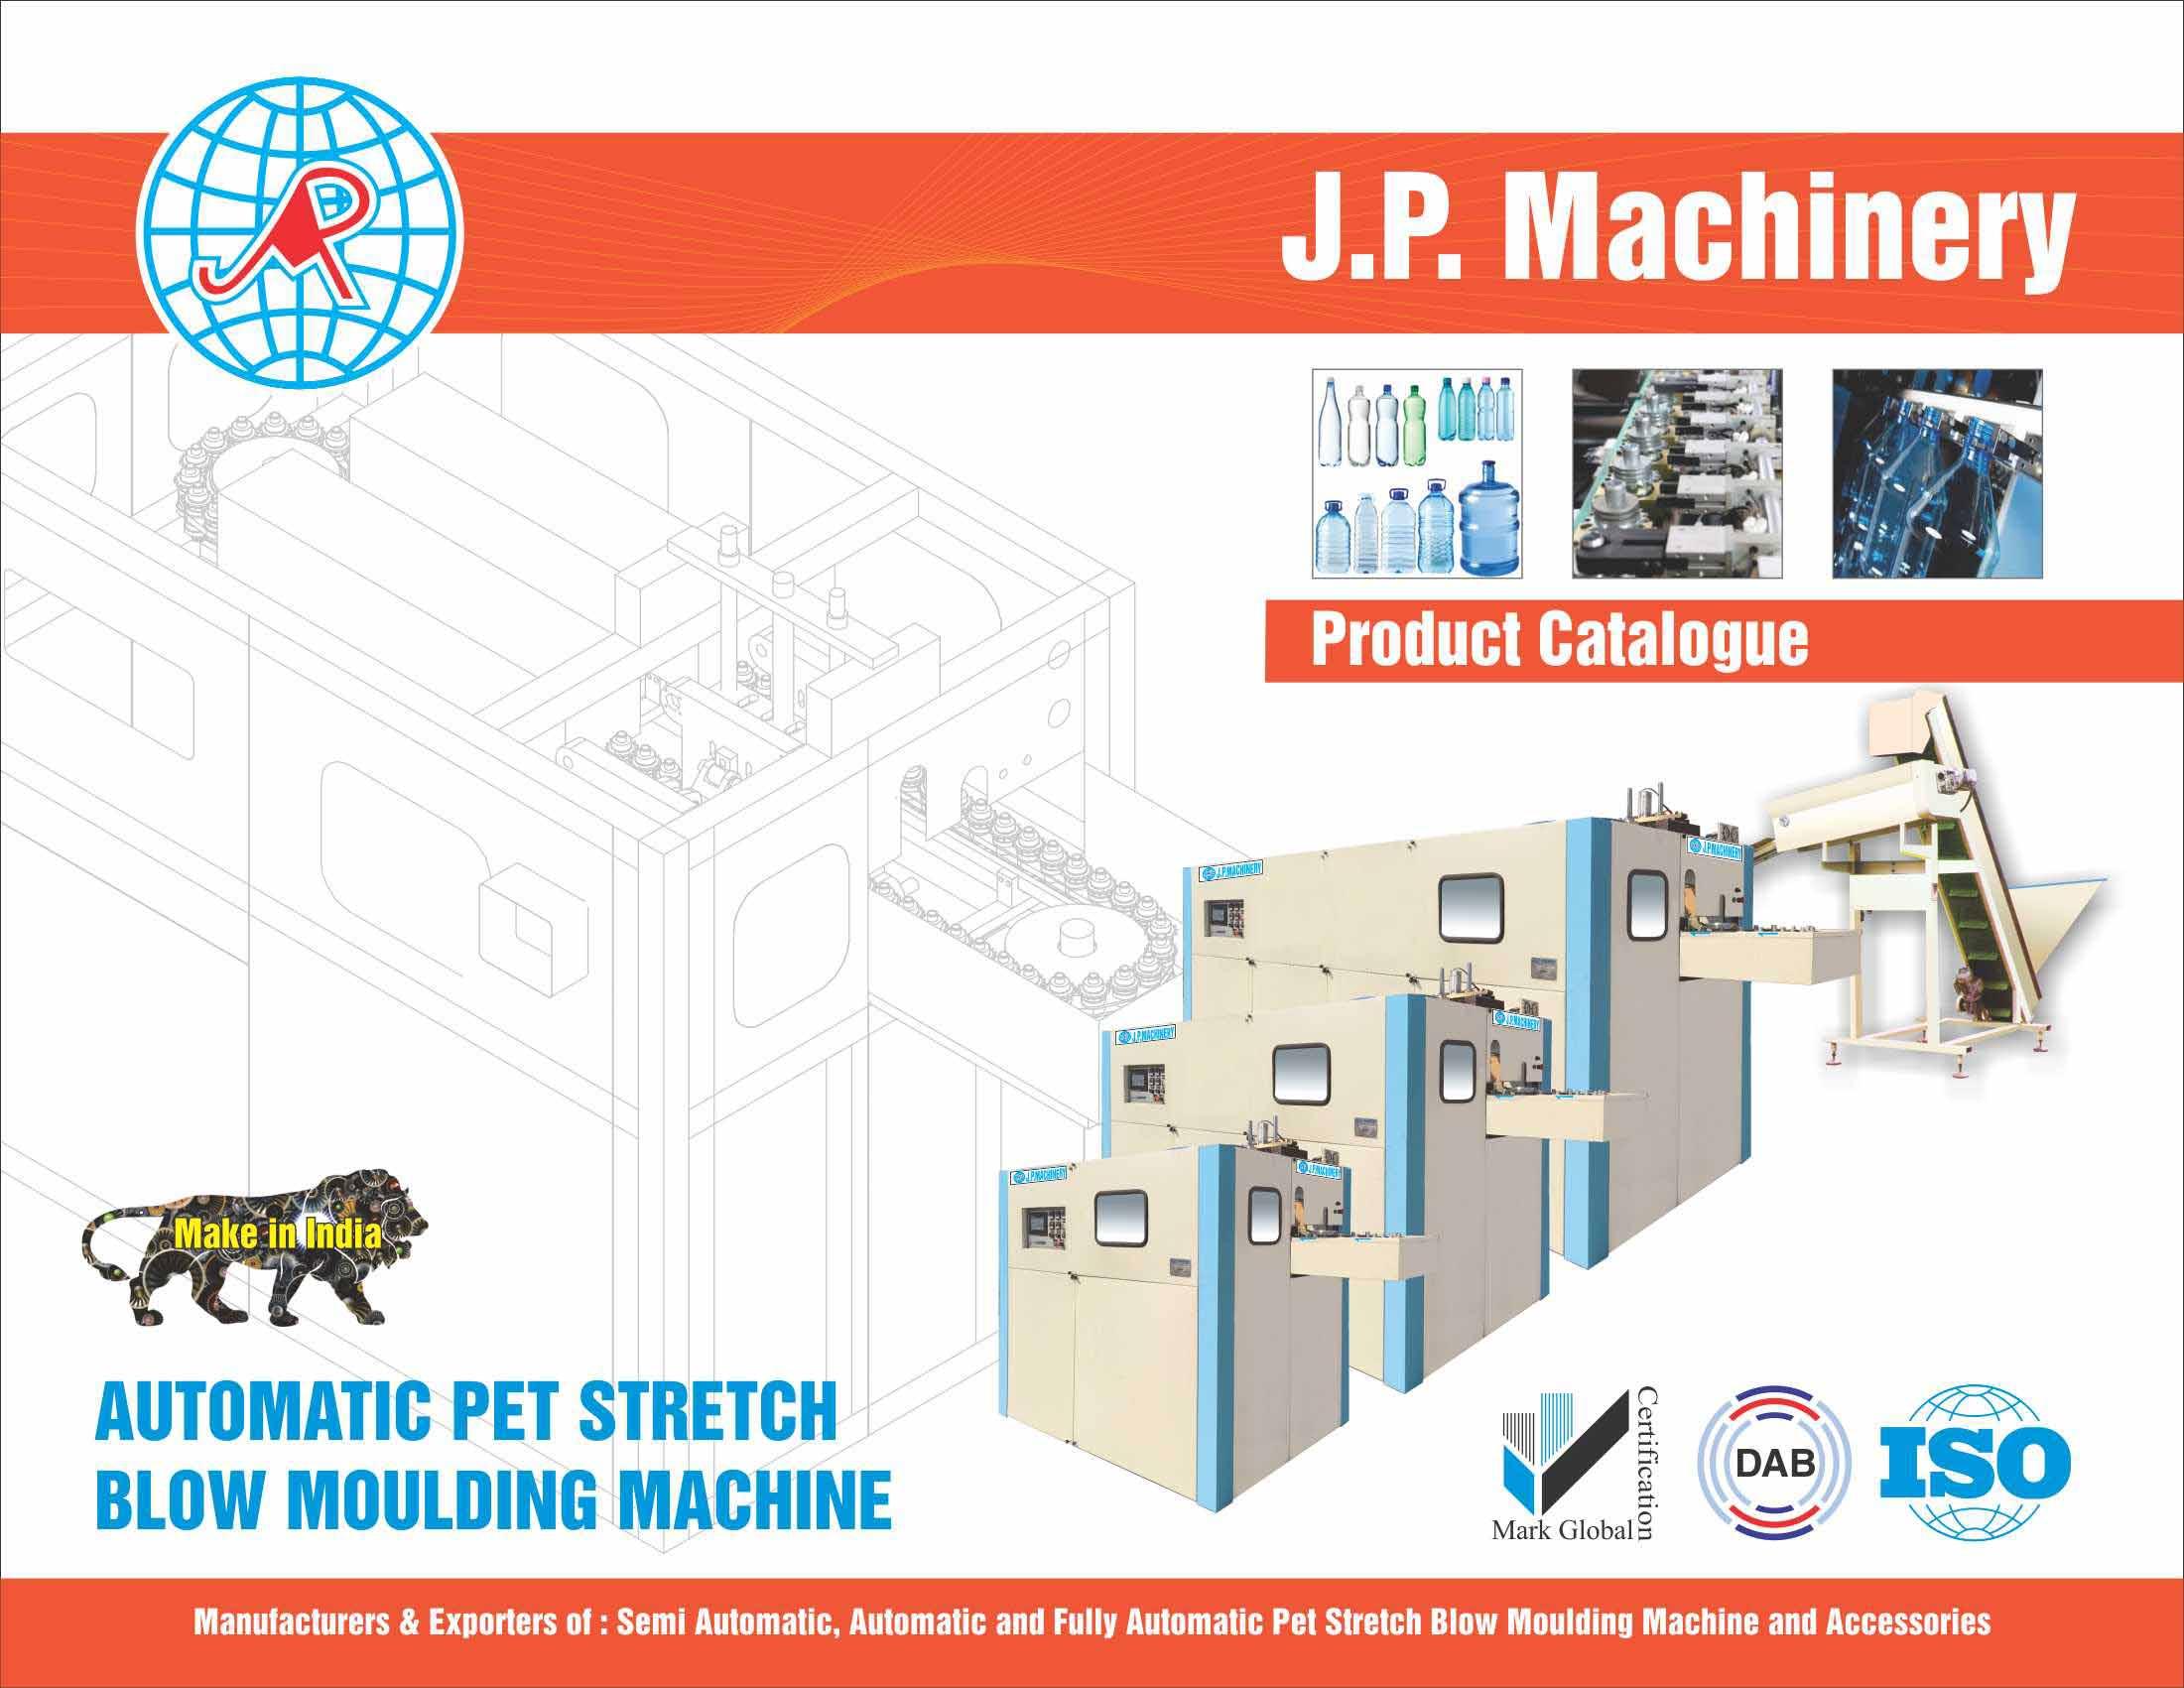 J.P Machinery